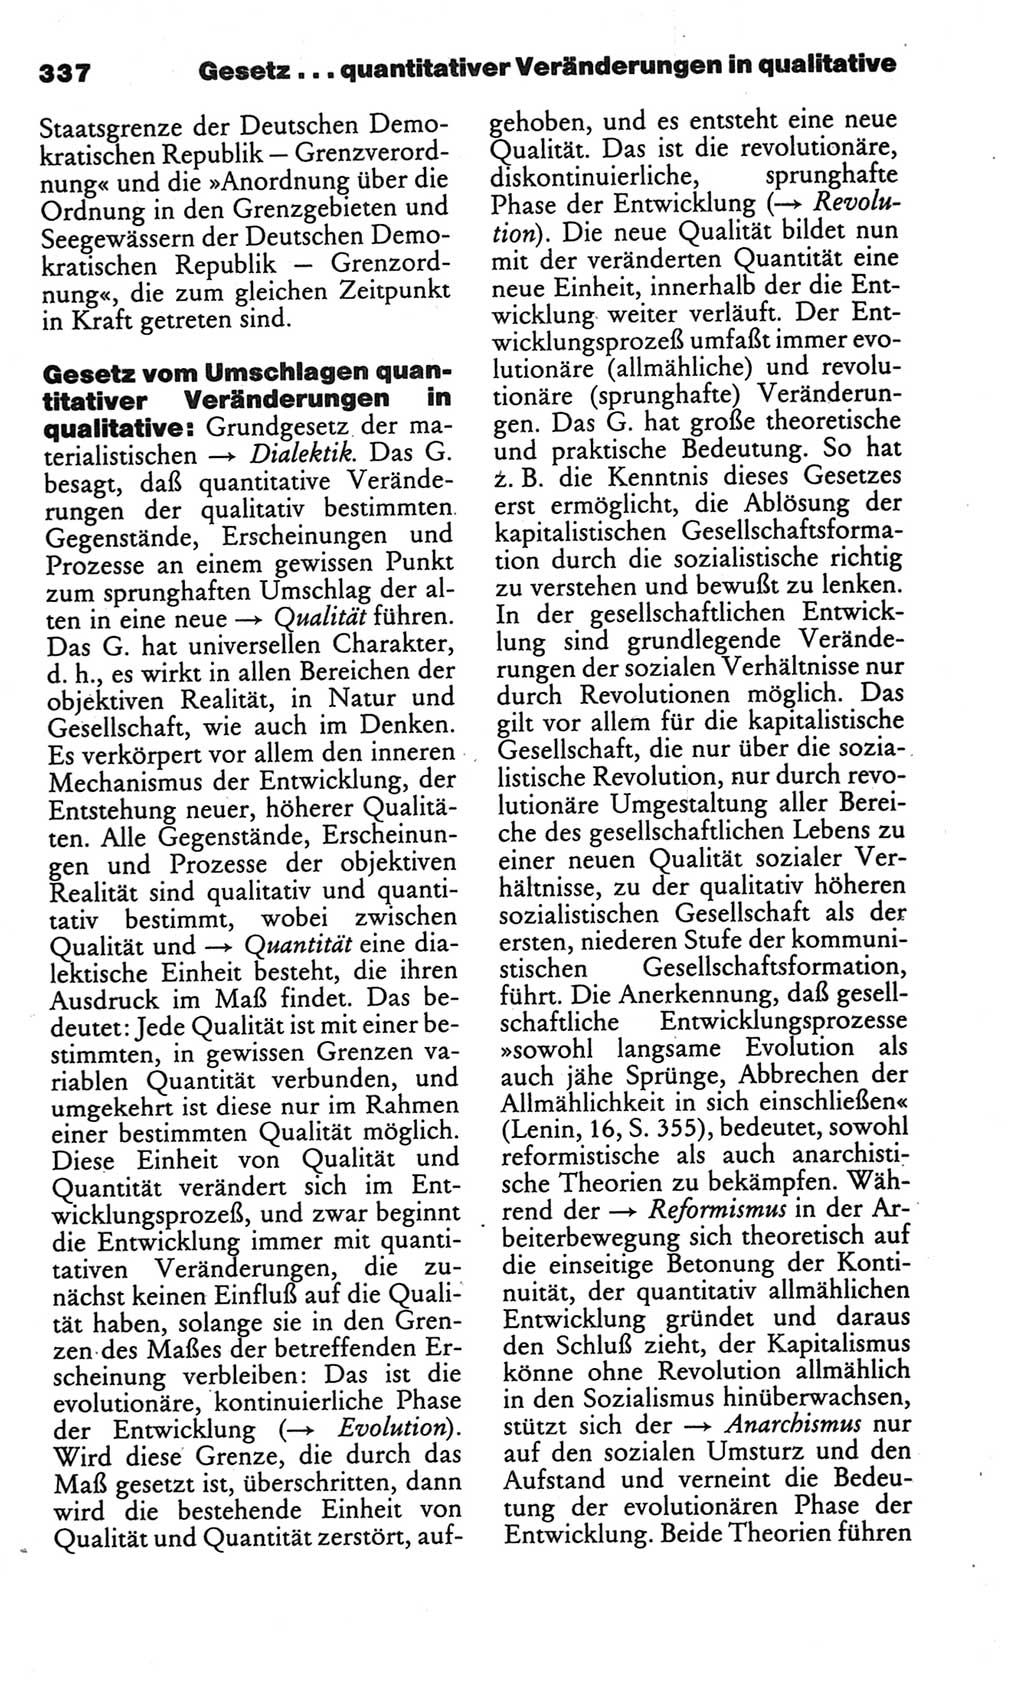 Kleines politisches Wörterbuch [Deutsche Demokratische Republik (DDR)] 1986, Seite 337 (Kl. pol. Wb. DDR 1986, S. 337)